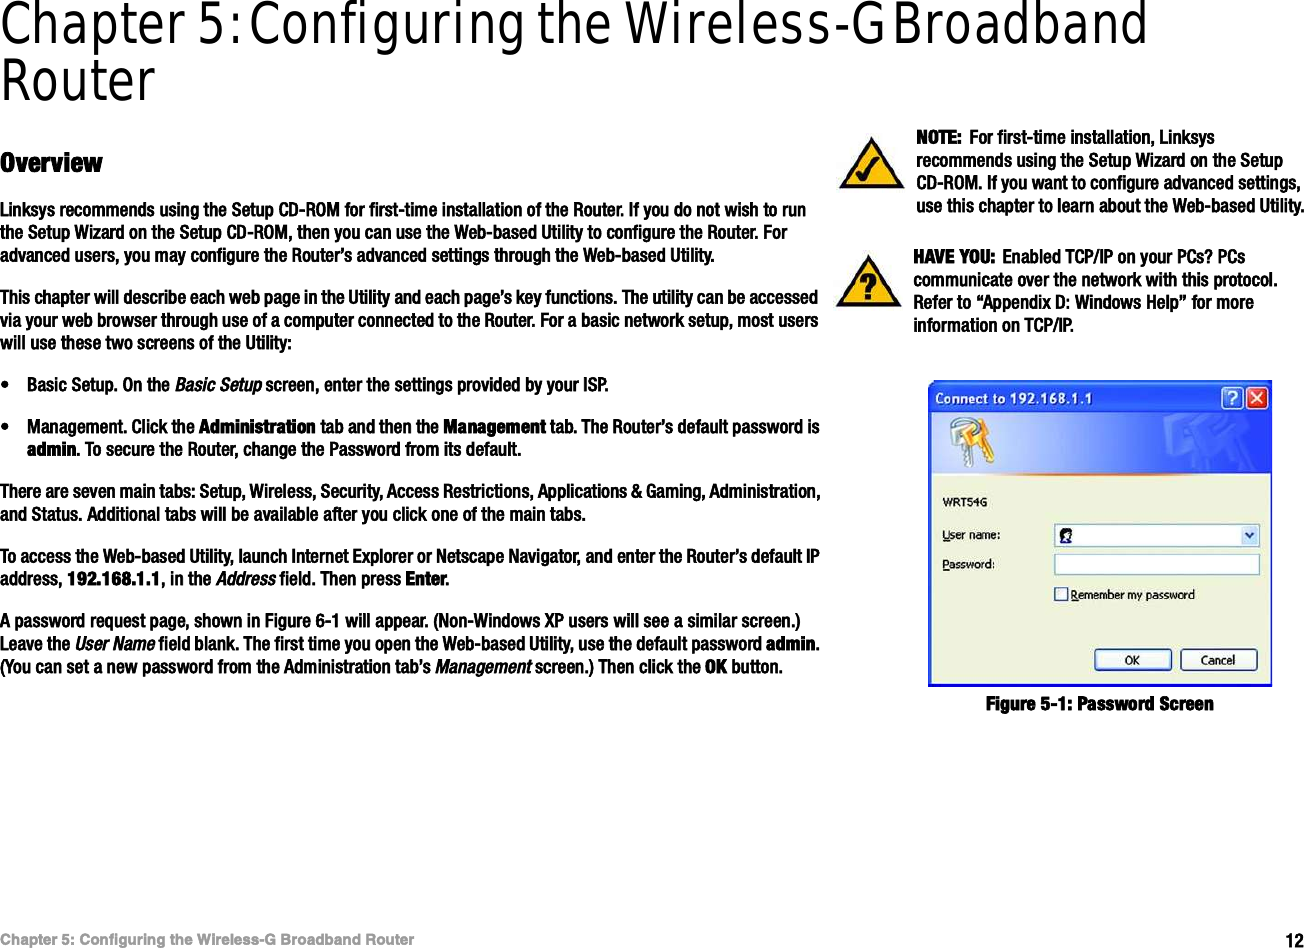 ïîÝ¸¿°¬»® ëæ Ý±²º·¹«®·²¹ ¬¸» É·®»´»--óÙ Þ®±¿¼¾¿²¼ Î±«¬»®Ñª»®ª·»©É·®»´»--óÙ Þ®±¿¼¾¿²¼ Î±«¬»®Chapter 5: Configuring the Wireless-G Broadband RouterÑª»®ª·»©Ô·²µ-§- ®»½±³³»²¼- «-·²¹ ¬¸» Í»¬«° ÝÜóÎÑÓ º±® º·®-¬ó¬·³» ·²-¬¿´´¿¬·±² ±º ¬¸» Î±«¬»®ò ×º §±« ¼± ²±¬ ©·-¸ ¬± ®«² ¬¸» Í»¬«° É·¦¿®¼ ±² ¬¸» Í»¬«° ÝÜóÎÑÓô ¬¸»² §±« ½¿² «-» ¬¸» É»¾ó¾¿-»¼ Ë¬·´·¬§ ¬± ½±²º·¹«®» ¬¸» Î±«¬»®ò Ú±® ¿¼ª¿²½»¼ «-»®-ô §±« ³¿§ ½±²º·¹«®» ¬¸» Î±«¬»®Ž- ¿¼ª¿²½»¼ -»¬¬·²¹- ¬¸®±«¹¸ ¬¸» É»¾ó¾¿-»¼ Ë¬·´·¬§òÌ¸·- ½¸¿°¬»® ©·´´ ¼»-½®·¾» »¿½¸ ©»¾ °¿¹» ·² ¬¸» Ë¬·´·¬§ ¿²¼ »¿½¸ °¿¹»Ž- µ»§ º«²½¬·±²-ò Ì¸» «¬·´·¬§ ½¿² ¾» ¿½½»--»¼ ª·¿ §±«® ©»¾ ¾®±©-»® ¬¸®±«¹¸ «-» ±º ¿ ½±³°«¬»® ½±²²»½¬»¼ ¬± ¬¸» Î±«¬»®ò Ú±® ¿ ¾¿-·½ ²»¬©±®µ -»¬«°ô ³±-¬ «-»®- ©·´´ «-» ¬¸»-» ¬©± -½®»»²- ±º ¬¸» Ë¬·´·¬§æ¡Þ¿-·½ Í»¬«°ò Ñ² ¬¸» Þ¿-·½ Í»¬«° -½®»»²ô »²¬»® ¬¸» -»¬¬·²¹- °®±ª·¼»¼ ¾§ §±«® ×ÍÐò¡Ó¿²¿¹»³»²¬ò Ý´·½µ ¬¸» ß¼³·²·-¬®¿¬·±² ¬¿¾ ¿²¼ ¬¸»² ¬¸» Ó¿²¿¹»³»²¬ ¬¿¾ò Ì¸» Î±«¬»®Ž- ¼»º¿«´¬ °¿--©±®¼ ·- ¿¼³·²ò Ì± -»½«®» ¬¸» Î±«¬»®ô ½¸¿²¹» ¬¸» Ð¿--©±®¼ º®±³ ·¬- ¼»º¿«´¬òÌ¸»®» ¿®» -»ª»² ³¿·² ¬¿¾-æ Í»¬«°ô É·®»´»--ô Í»½«®·¬§ô ß½½»-- Î»-¬®·½¬·±²-ô ß°°´·½¿¬·±²- ú Ù¿³·²¹ô ß¼³·²·-¬®¿¬·±²ô ¿²¼ Í¬¿¬«-ò ß¼¼·¬·±²¿´ ¬¿¾- ©·´´ ¾» ¿ª¿·´¿¾´» ¿º¬»® §±« ½´·½µ ±²» ±º ¬¸» ³¿·² ¬¿¾-òÌ± ¿½½»-- ¬¸» É»¾ó¾¿-»¼ Ë¬·´·¬§ô ´¿«²½¸ ×²¬»®²»¬ Û¨°´±®»® ±® Ò»¬-½¿°» Ò¿ª·¹¿¬±®ô ¿²¼ »²¬»® ¬¸» Î±«¬»®Ž- ¼»º¿«´¬ ×Ð ¿¼¼®»--ô ïçîòïêèòïòïô ·² ¬¸» ß¼¼®»-- º·»´¼ò Ì¸»² °®»-- Û²¬»®òß °¿--©±®¼ ®»¯«»-¬ °¿¹»ô -¸±©² ·² Ú·¹«®» êóï ©·´´ ¿°°»¿®ò øÒ±²óÉ·²¼±©- ÈÐ «-»®- ©·´´ -»» ¿ -·³·´¿® -½®»»²ò÷ Ô»¿ª» ¬¸» Ë-»® Ò¿³» º·»´¼ ¾´¿²µò Ì¸» º·®-¬ ¬·³» §±« ±°»² ¬¸» É»¾ó¾¿-»¼ Ë¬·´·¬§ô «-» ¬¸» ¼»º¿«´¬ °¿--©±®¼ ¿¼³·²òøÇ±« ½¿² -»¬ ¿ ²»© °¿--©±®¼ º®±³ ¬¸» ß¼³·²·-¬®¿¬·±² ¬¿¾Ž- Ó¿²¿¹»³»²¬ -½®»»²ò÷ Ì¸»² ½´·½µ ¬¸» ÑÕ ¾«¬¬±²ò ØßÊÛ ÇÑËæ  Û²¿¾´»¼ ÌÝÐñ×Ð ±² §±«® ÐÝ-á ÐÝ- ½±³³«²·½¿¬» ±ª»® ¬¸» ²»¬©±®µ ©·¬¸ ¬¸·- °®±¬±½±´ò Î»º»® ¬± •ß°°»²¼·¨ Üæ É·²¼±©- Ø»´°Œ º±® ³±®» ·²º±®³¿¬·±² ±² ÌÝÐñ×ÐòÒÑÌÛæ Ú±® º·®-¬ó¬·³» ·²-¬¿´´¿¬·±²ô Ô·²µ-§- ®»½±³³»²¼- «-·²¹ ¬¸» Í»¬«° É·¦¿®¼ ±² ¬¸» Í»¬«° ÝÜóÎÑÓò ×º §±« ©¿²¬ ¬± ½±²º·¹«®» ¿¼ª¿²½»¼ -»¬¬·²¹-ô «-» ¬¸·- ½¸¿°¬»® ¬± ´»¿®² ¿¾±«¬ ¬¸» É»¾ó¾¿-»¼ Ë¬·´·¬§òÚ·¹«®» ëóïæ Ð¿--©±®¼ Í½®»»²